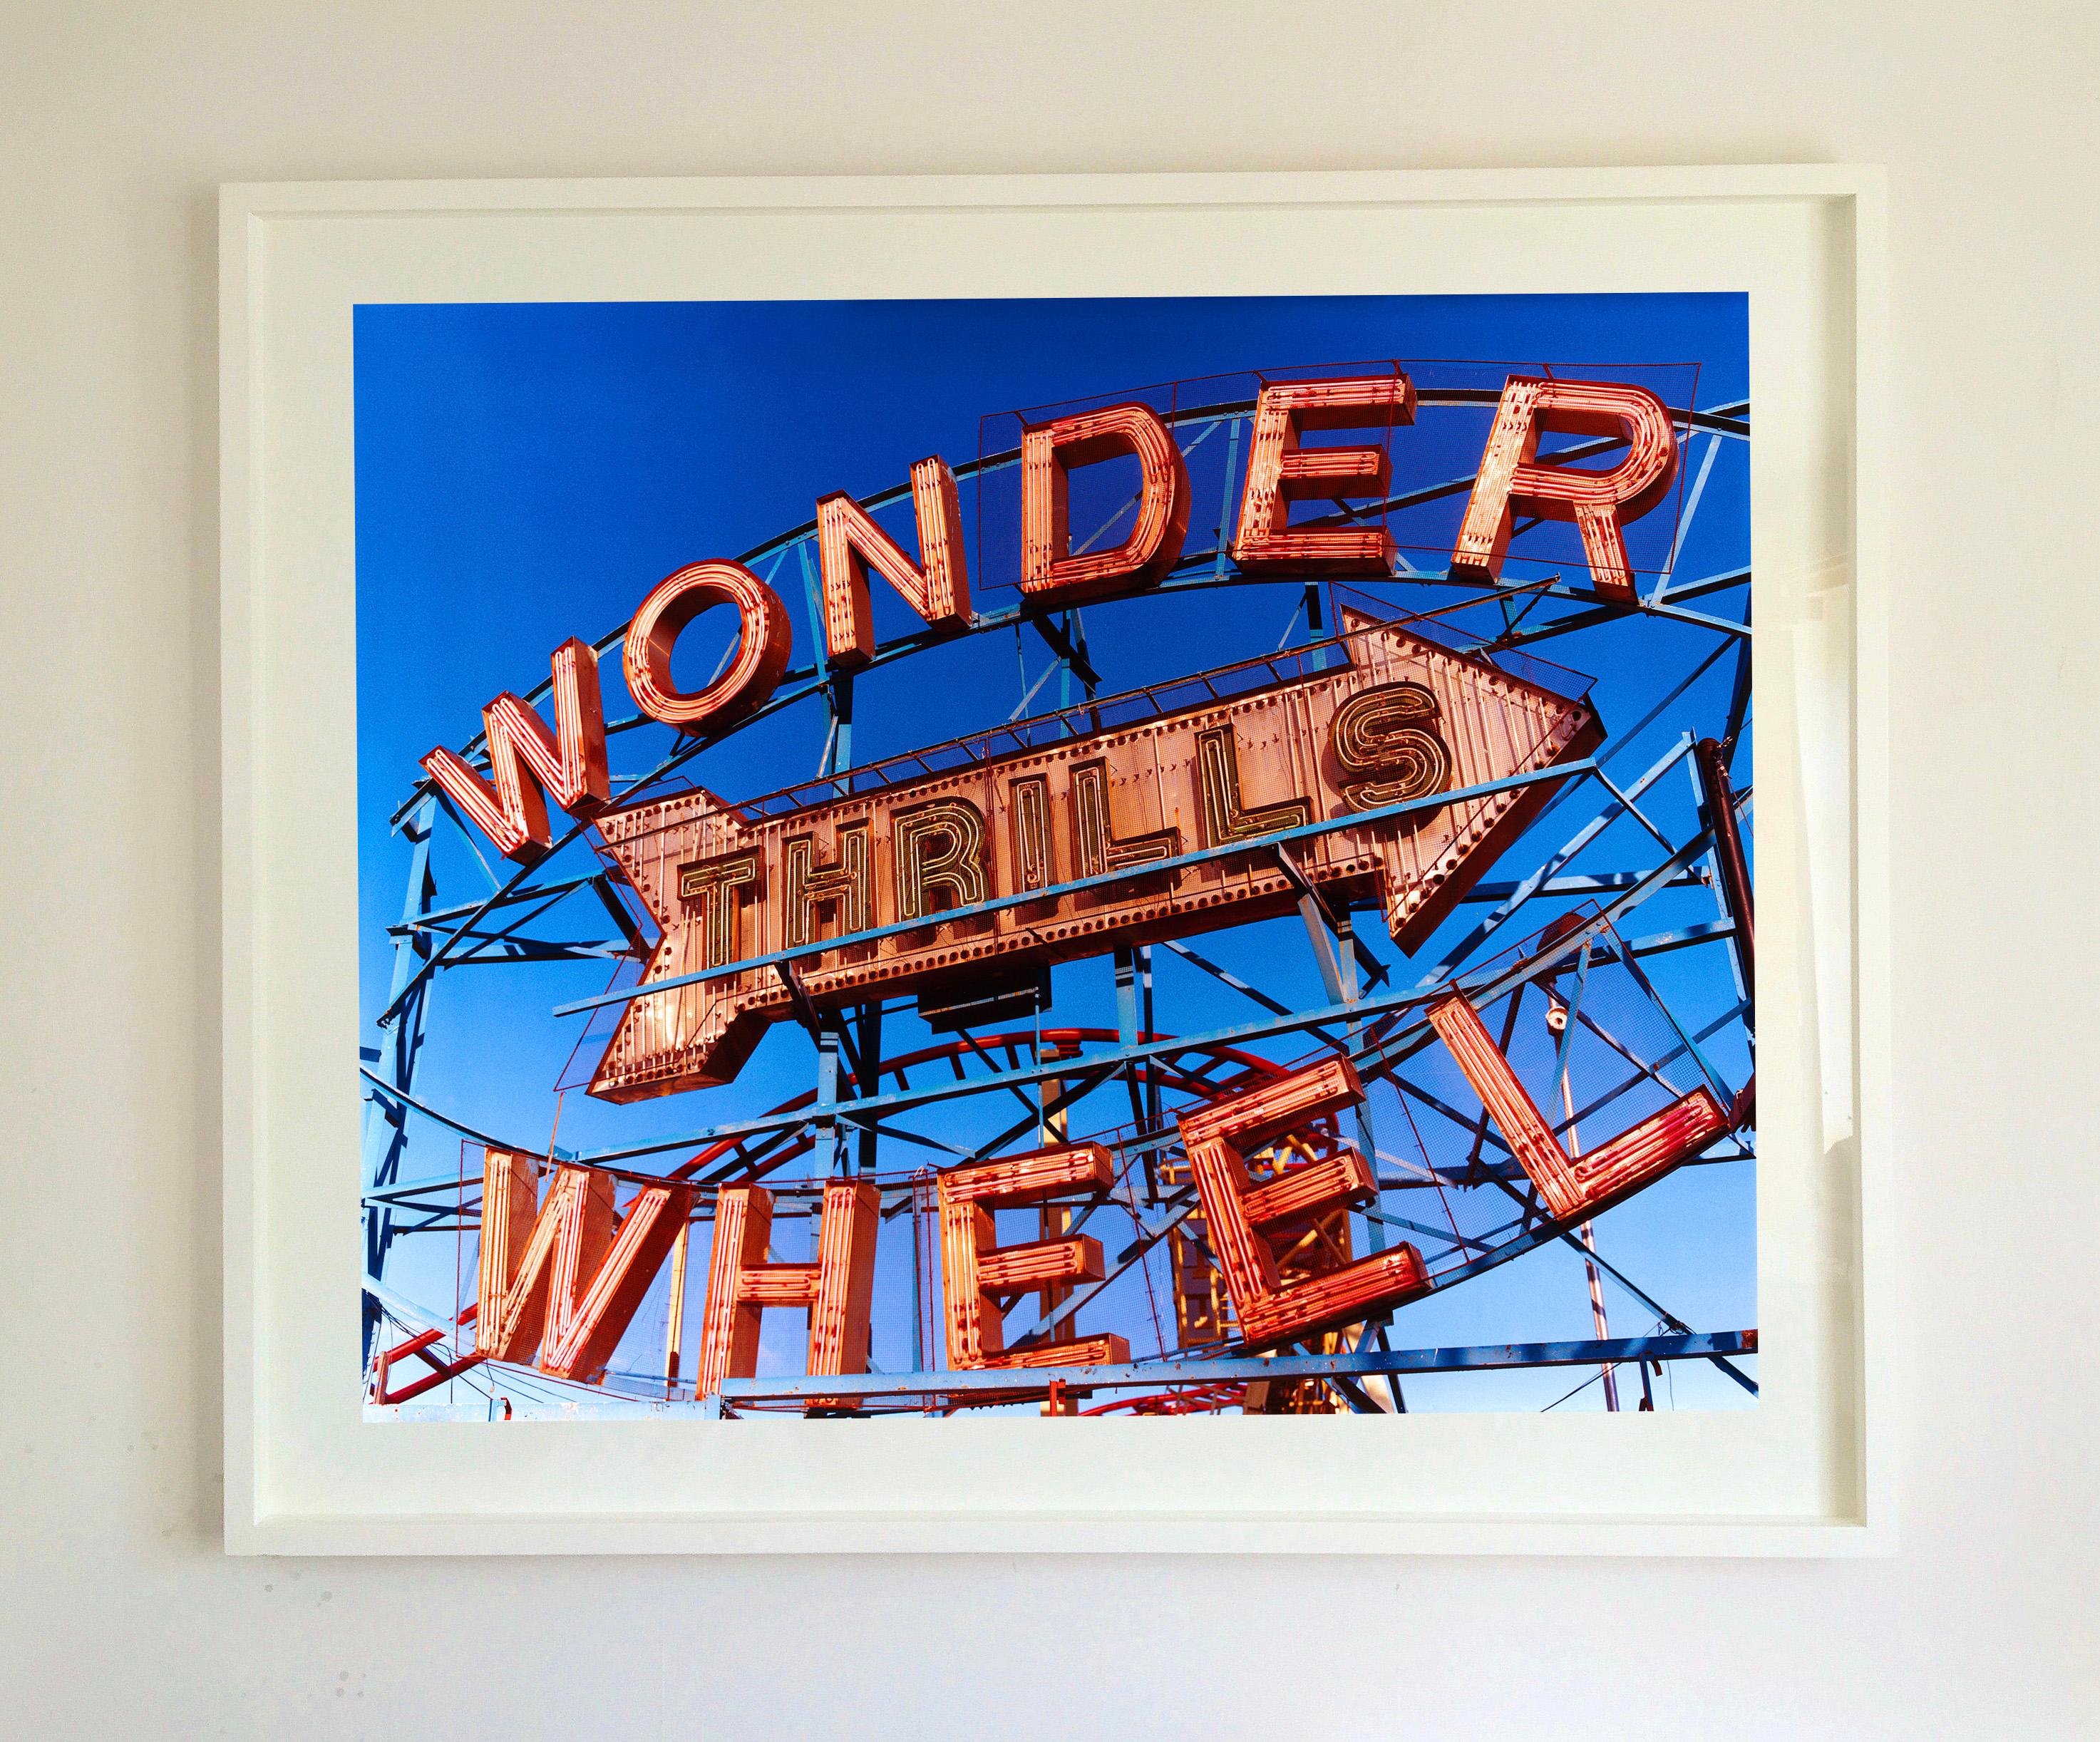 Thrills, Coney Island, New York – Architektur-Farbfotografie der Pop Art – Photograph von Richard Heeps